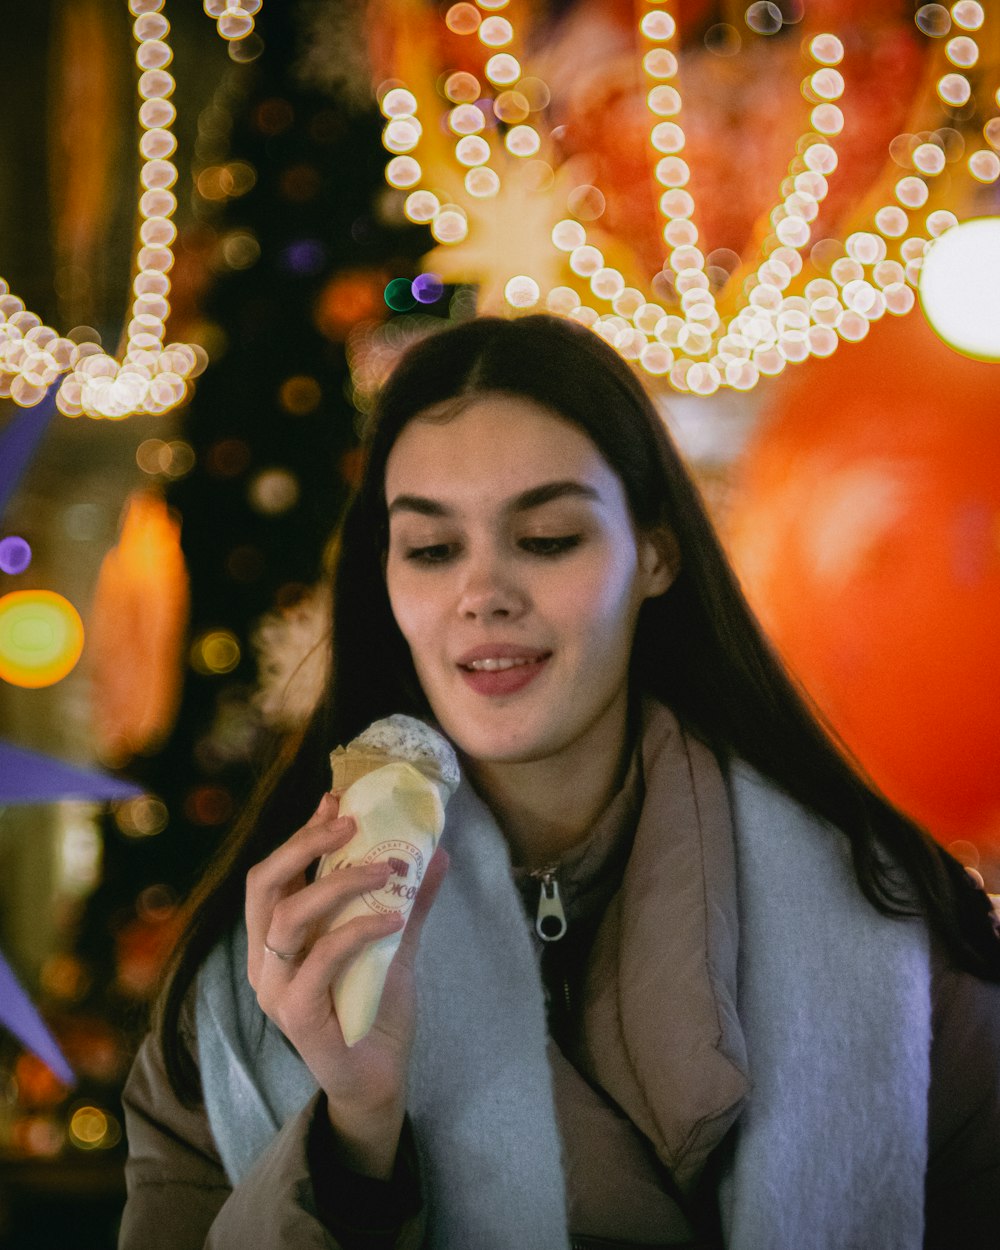 eine Frau, die vor einem Weihnachtsbaum einen Hot Dog isst